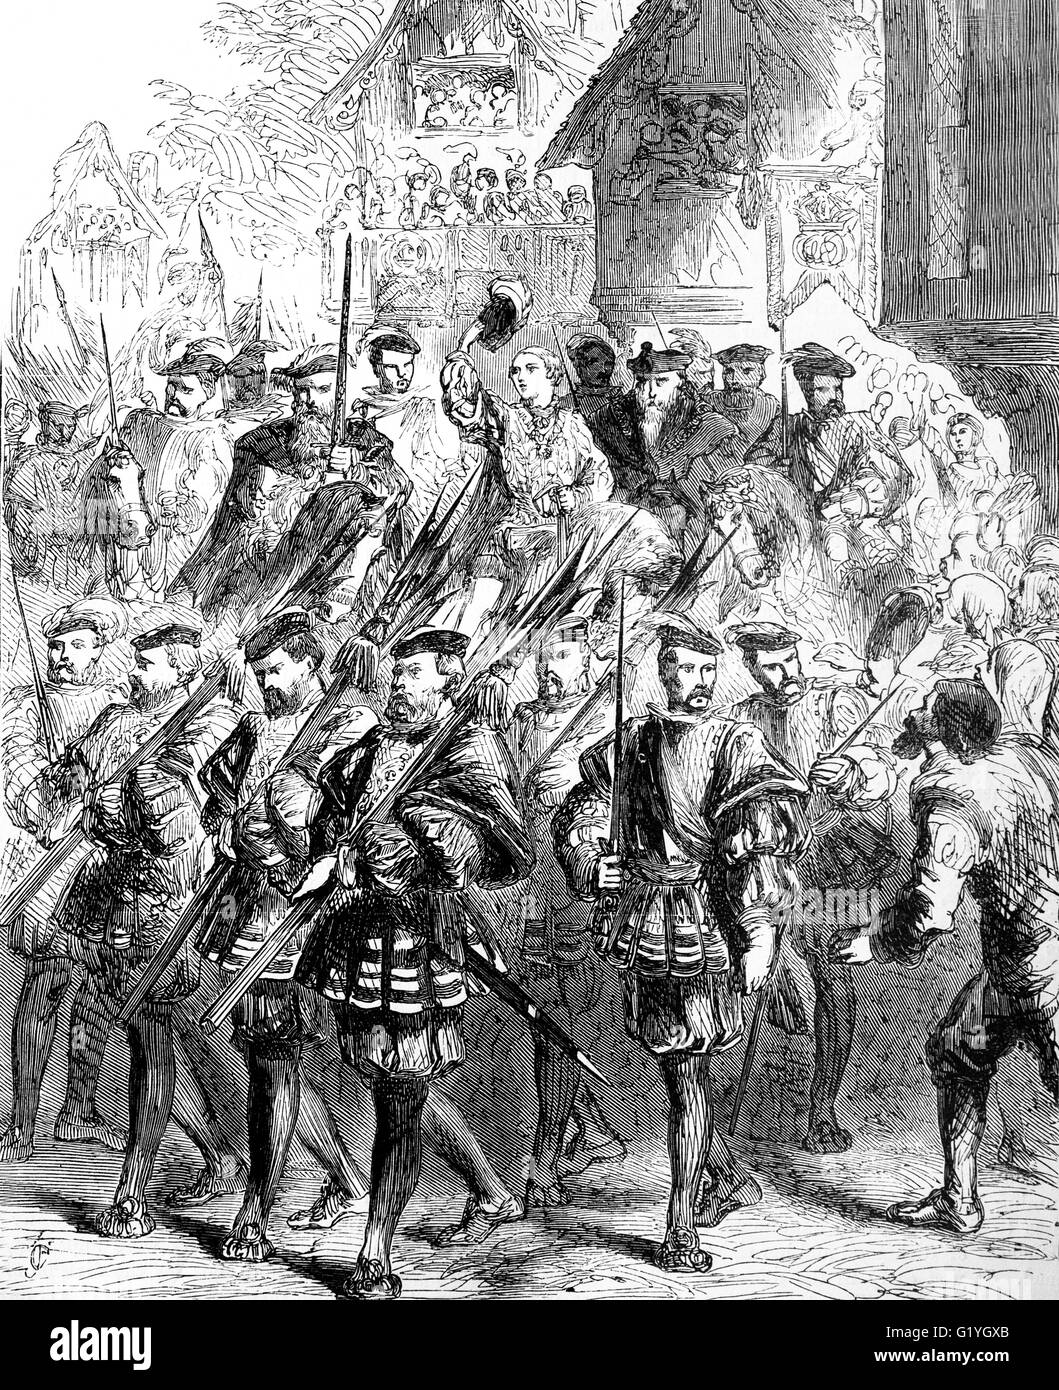 Edoardo VI di età compresa tra i 9 entrando a Londra il 20 febbraio1547 per la sua incoronazione. Il figlio di Enrico VIII e Jane Seymour, Edward era il terzo sovrano della Dinastia Tudor e Inghilterra del primo monarca sollevato come un protestante. Foto Stock